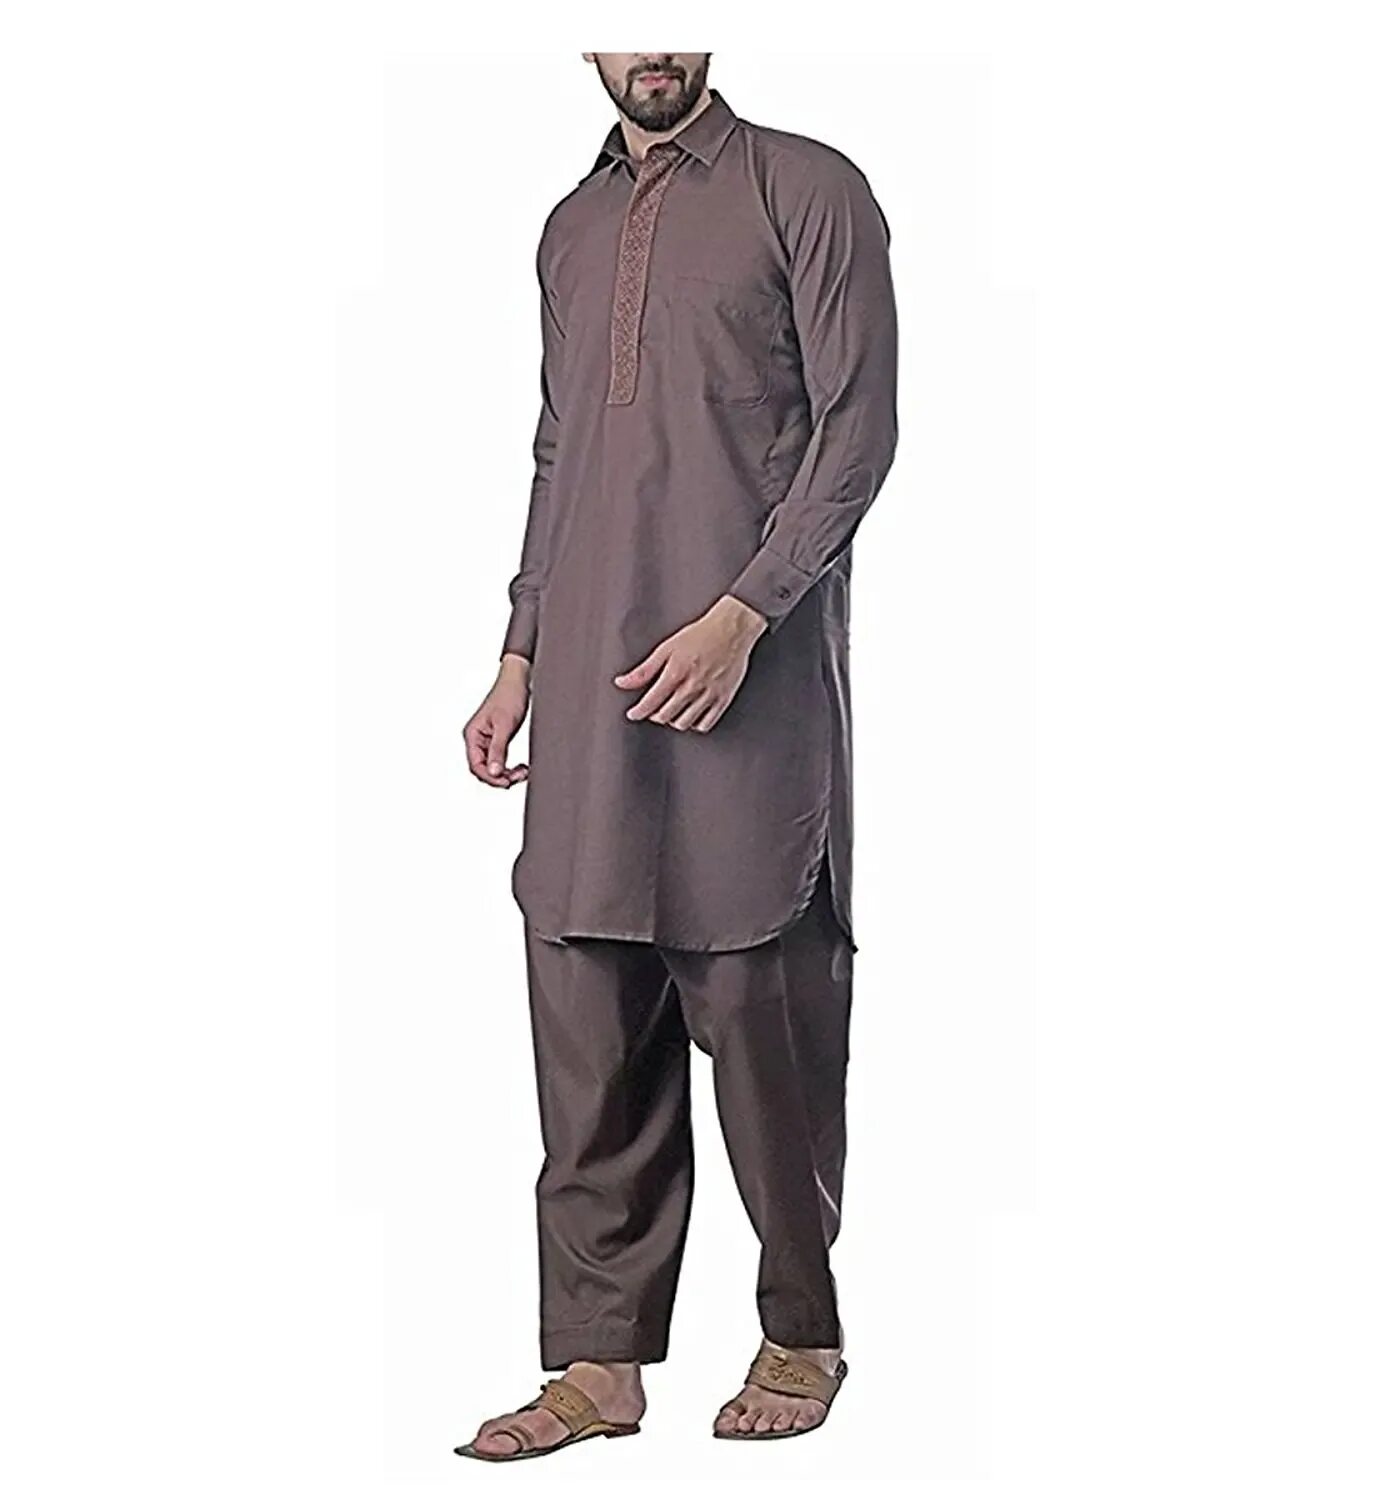 Камис Исламская мужская одежда. Исламские Камис костюмы мужские. Пакистанский Камис. Sajda мусульманская мужская одежда.